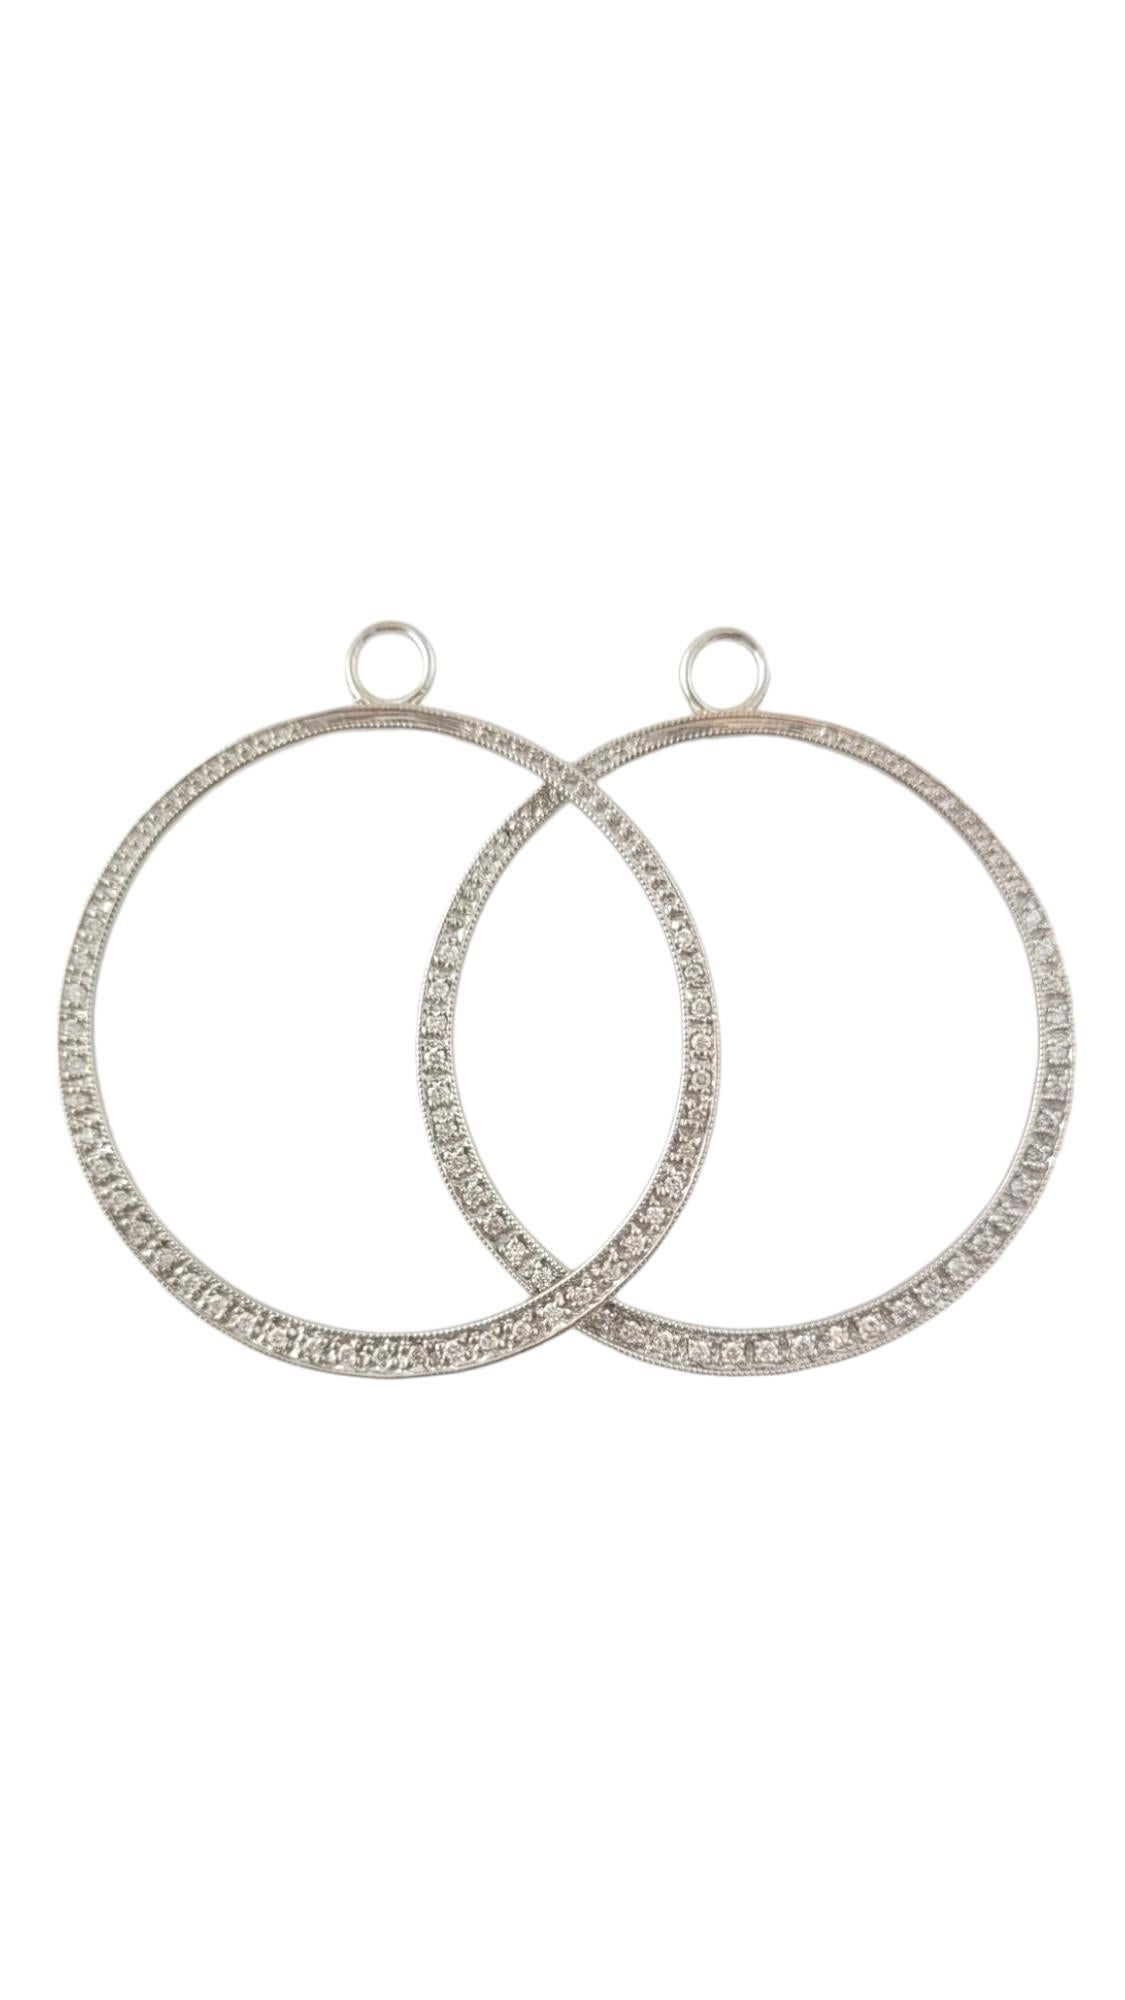 Vintage 14K White Gold Hoop Enhancers / Charms for Stud Earrings - (Boucles d'oreilles en or blanc)

Ces accessoires classiques en forme de cerceau, ornés de 70 diamants ronds étincelants, encadrent le visage avec élégance lorsqu'ils sont associés à